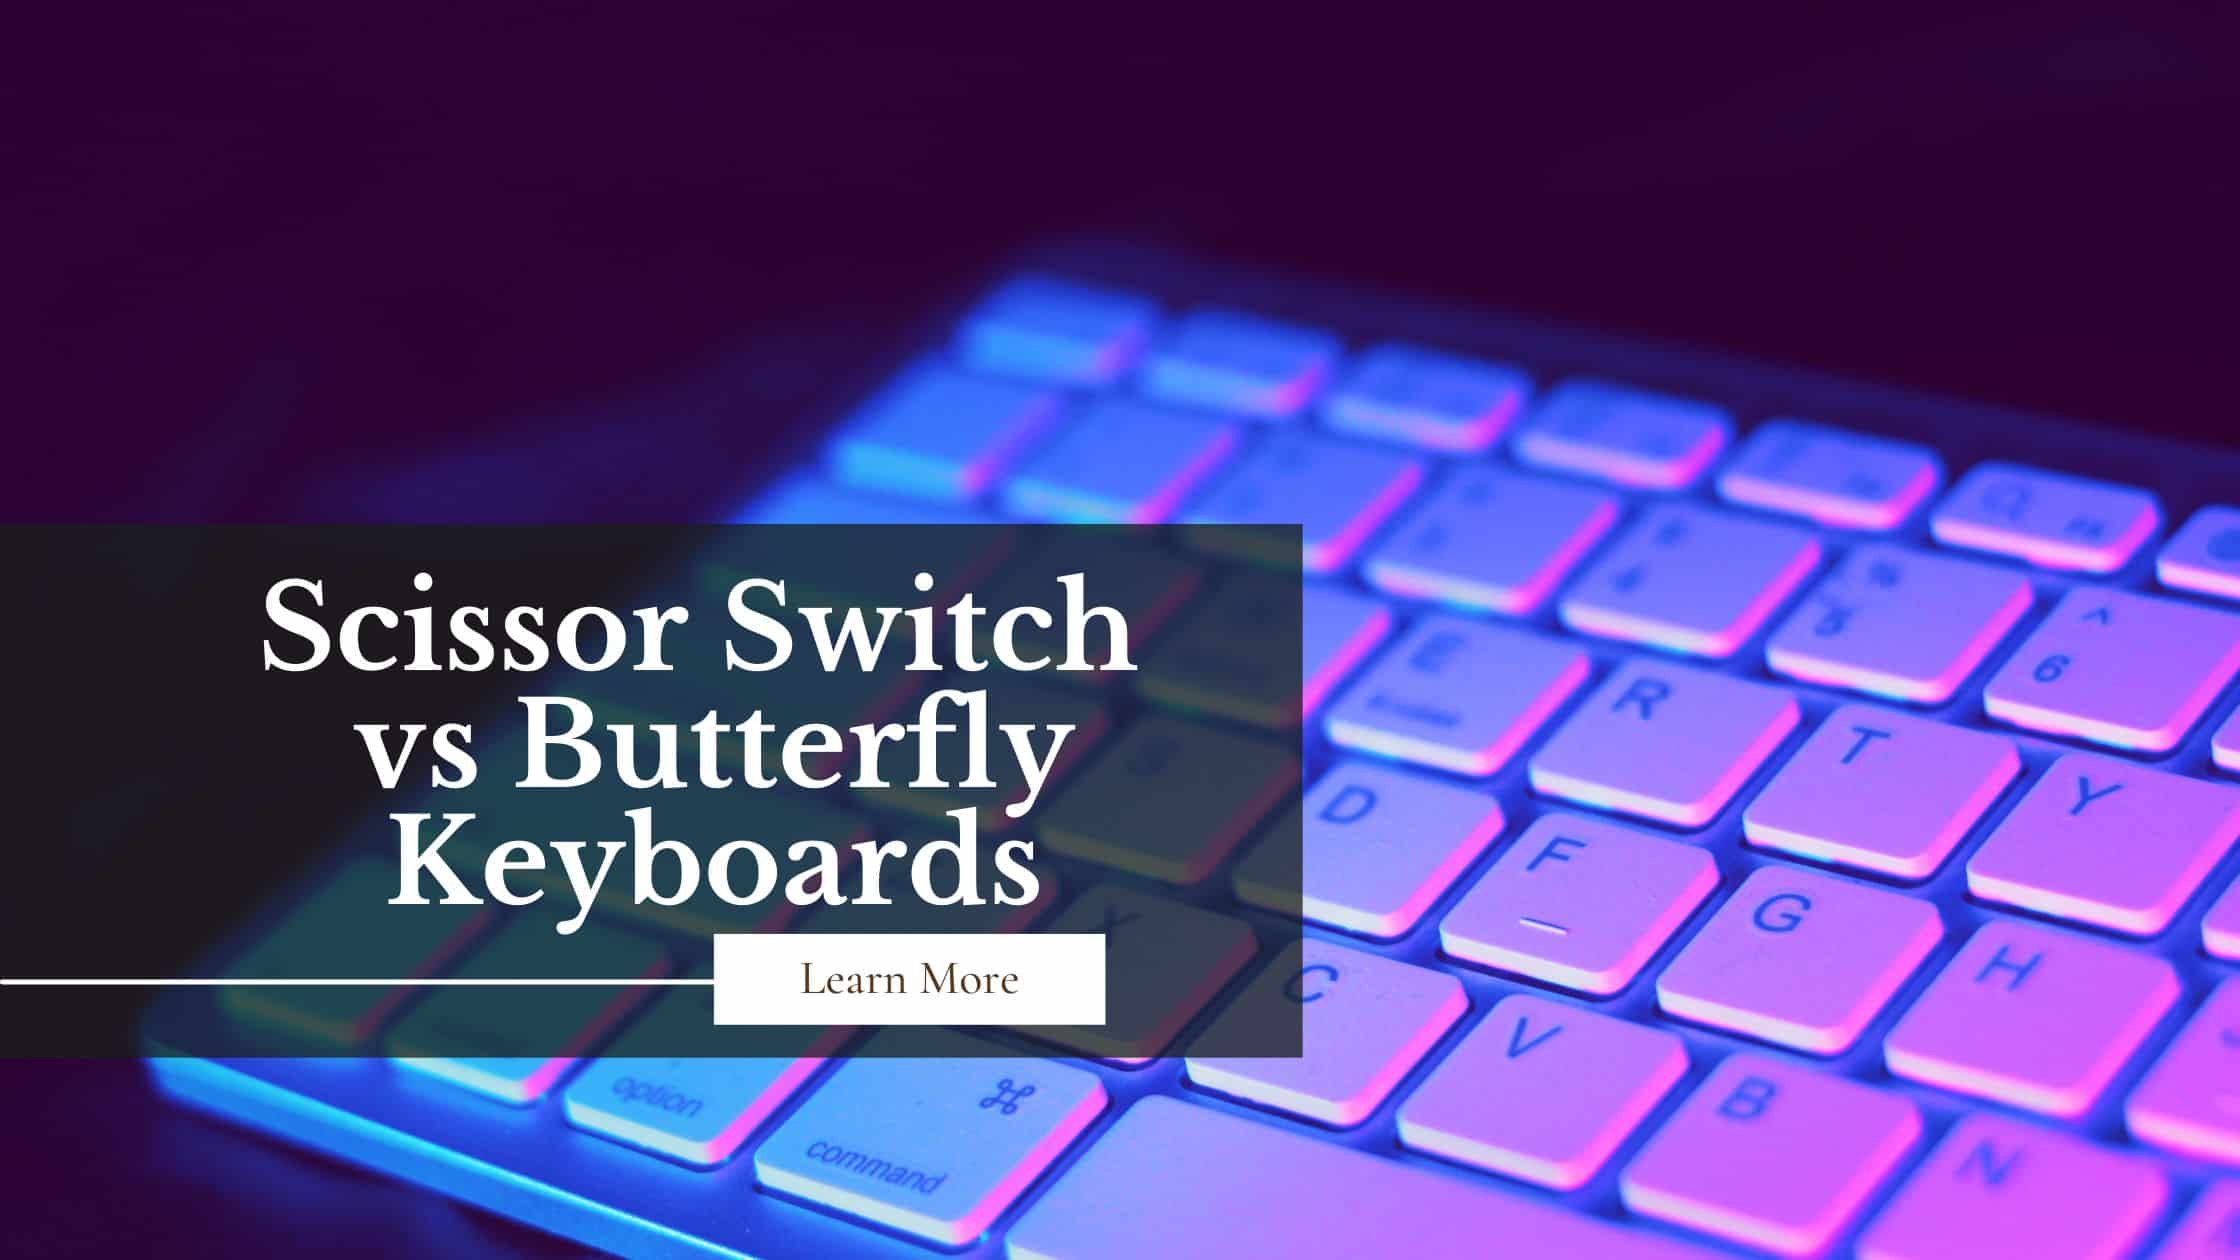 Scissor Switch vs Butterfly Keyboards Guide